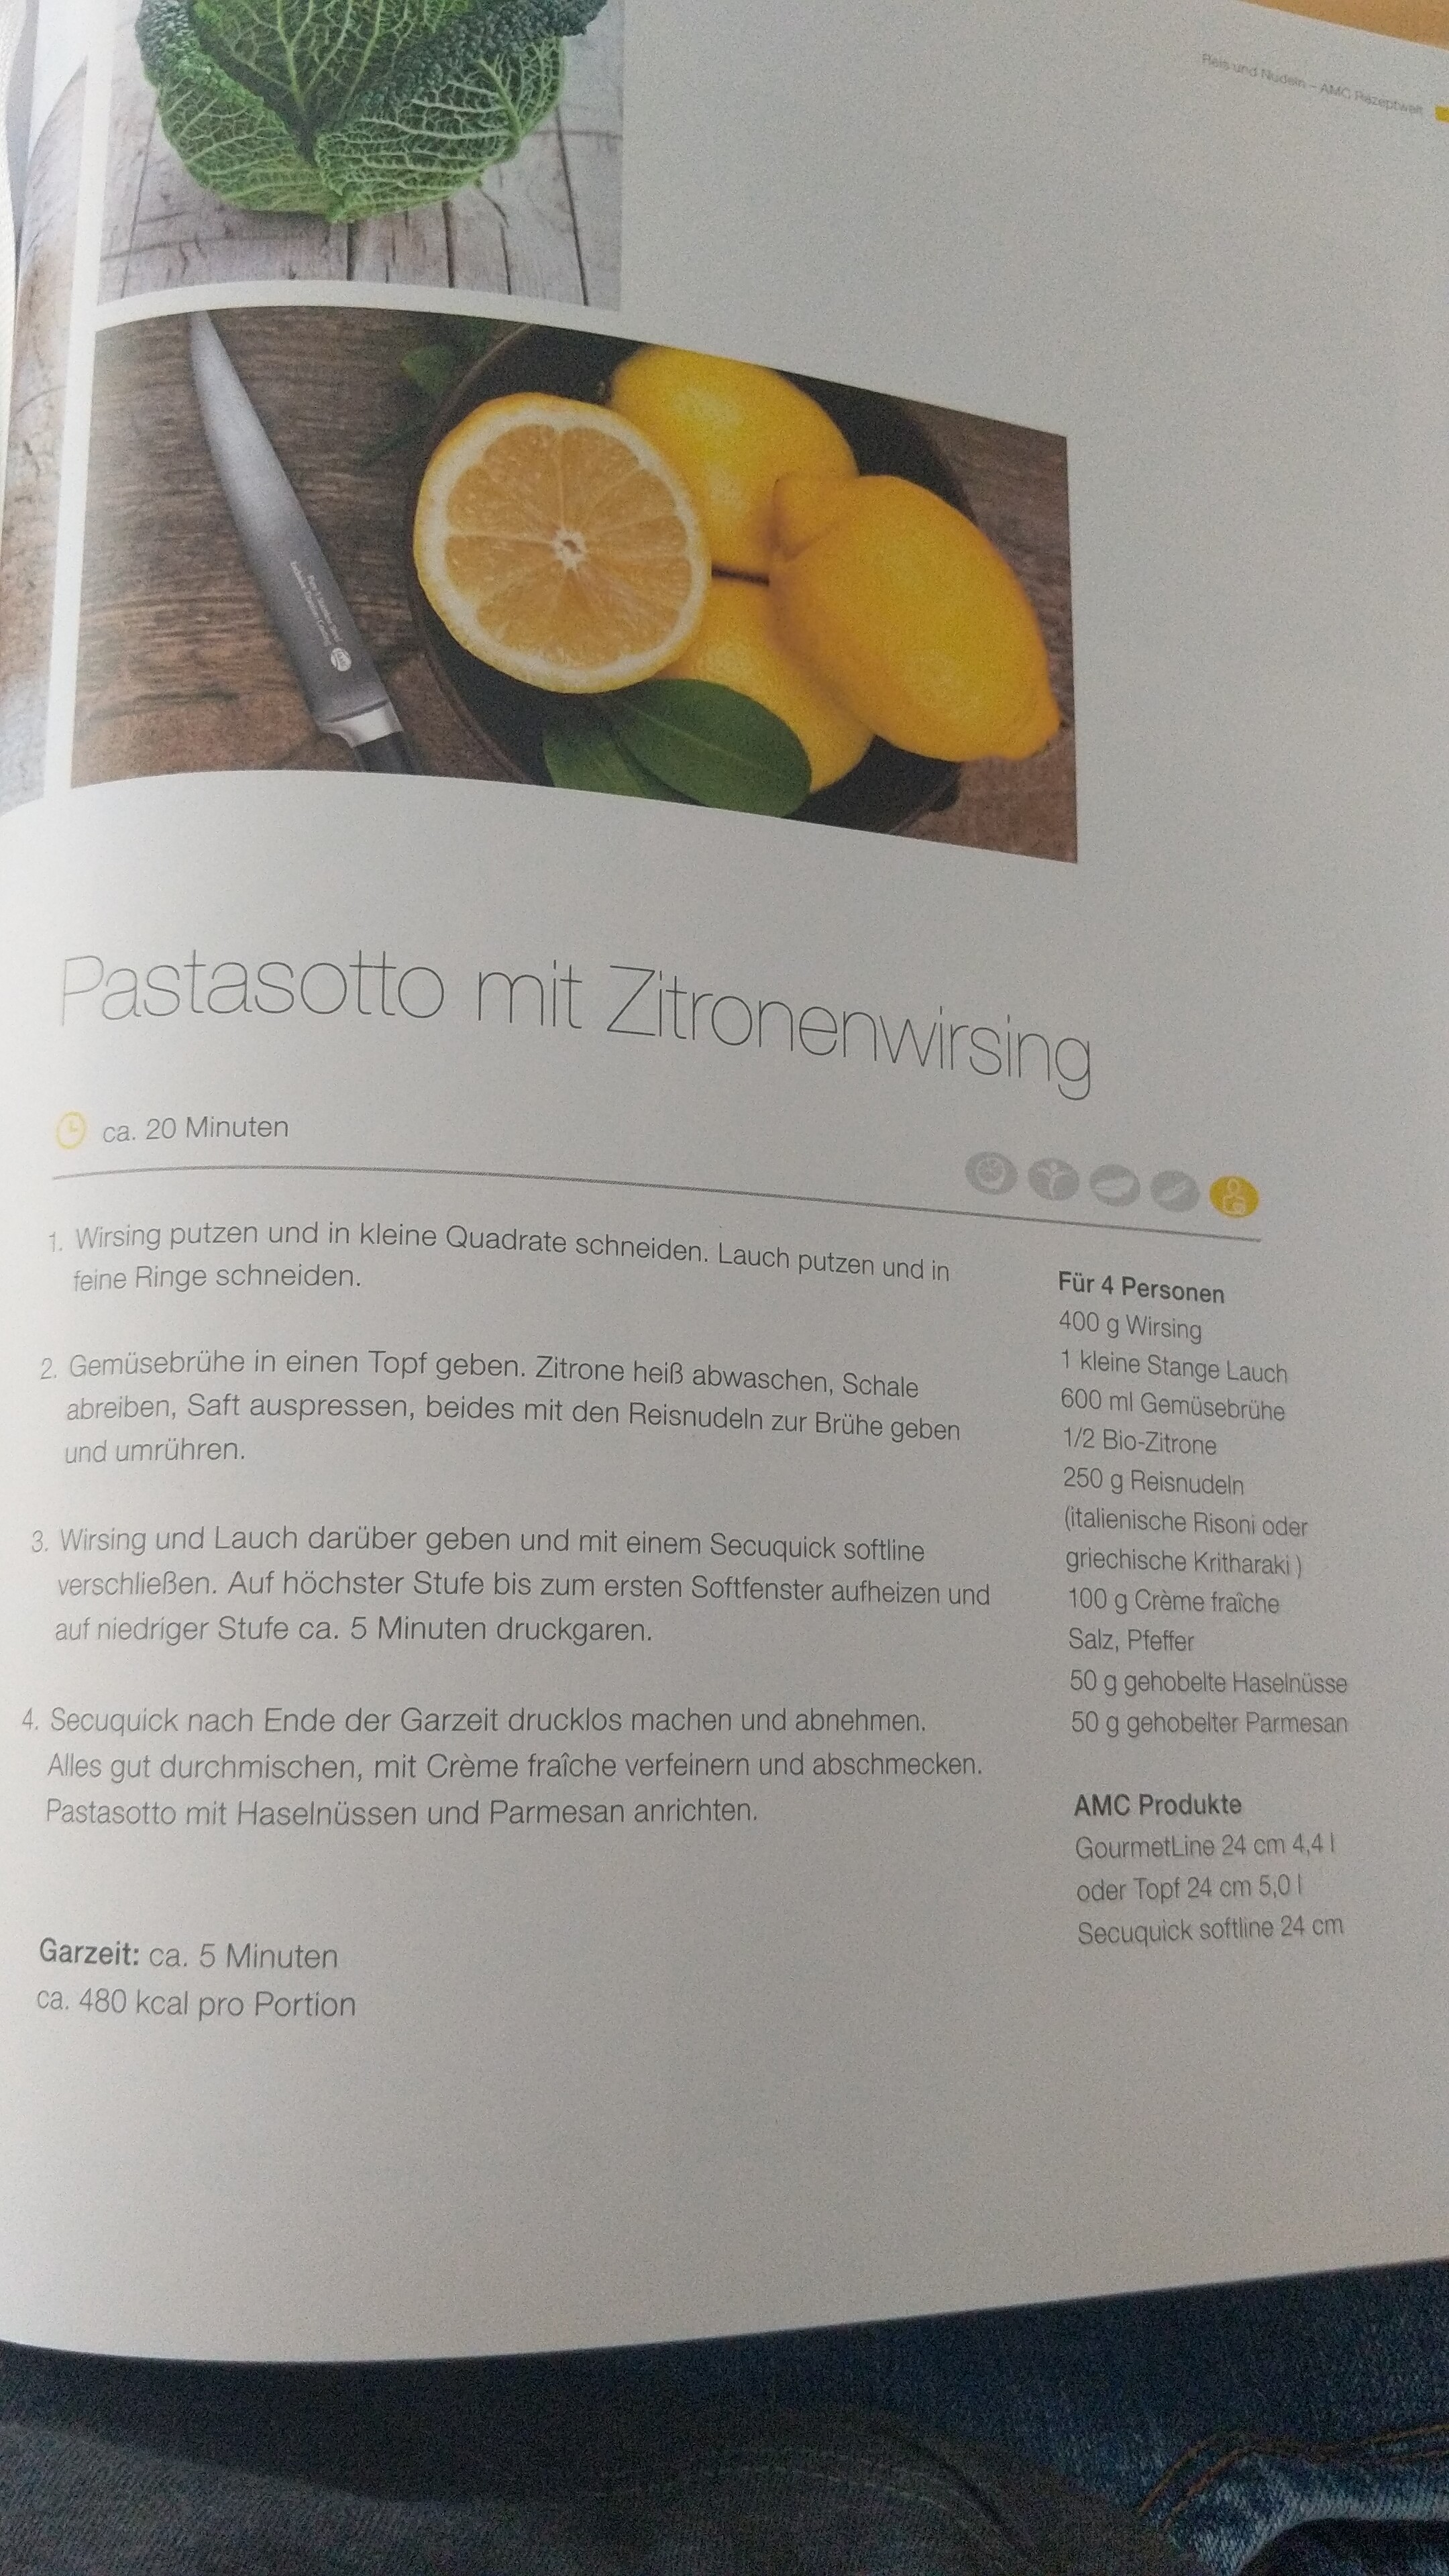 Zitronenwirsing